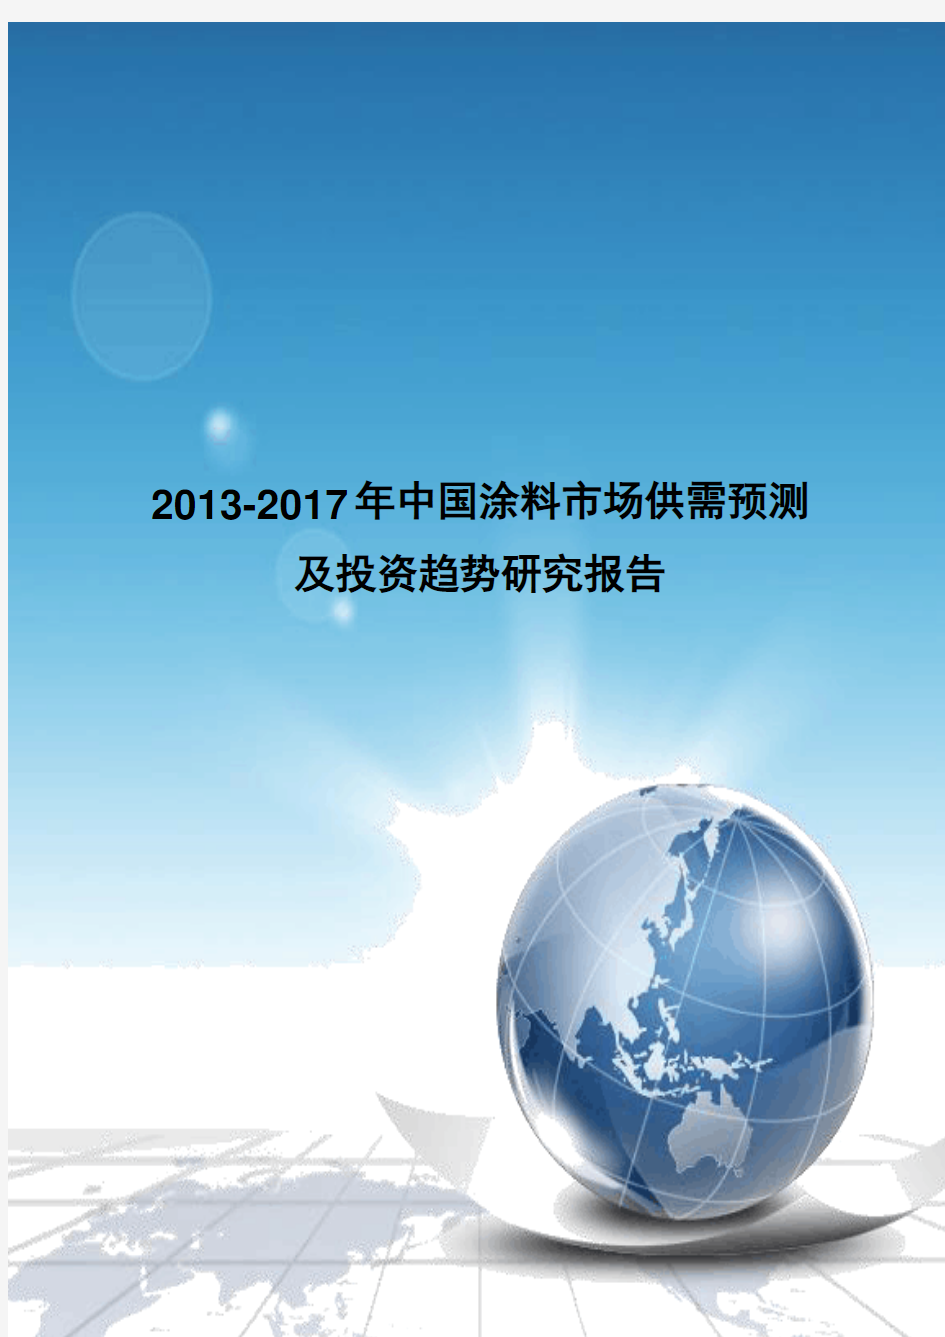 《2013-2017年中国涂料市场供需预测及投资趋势研究报告》